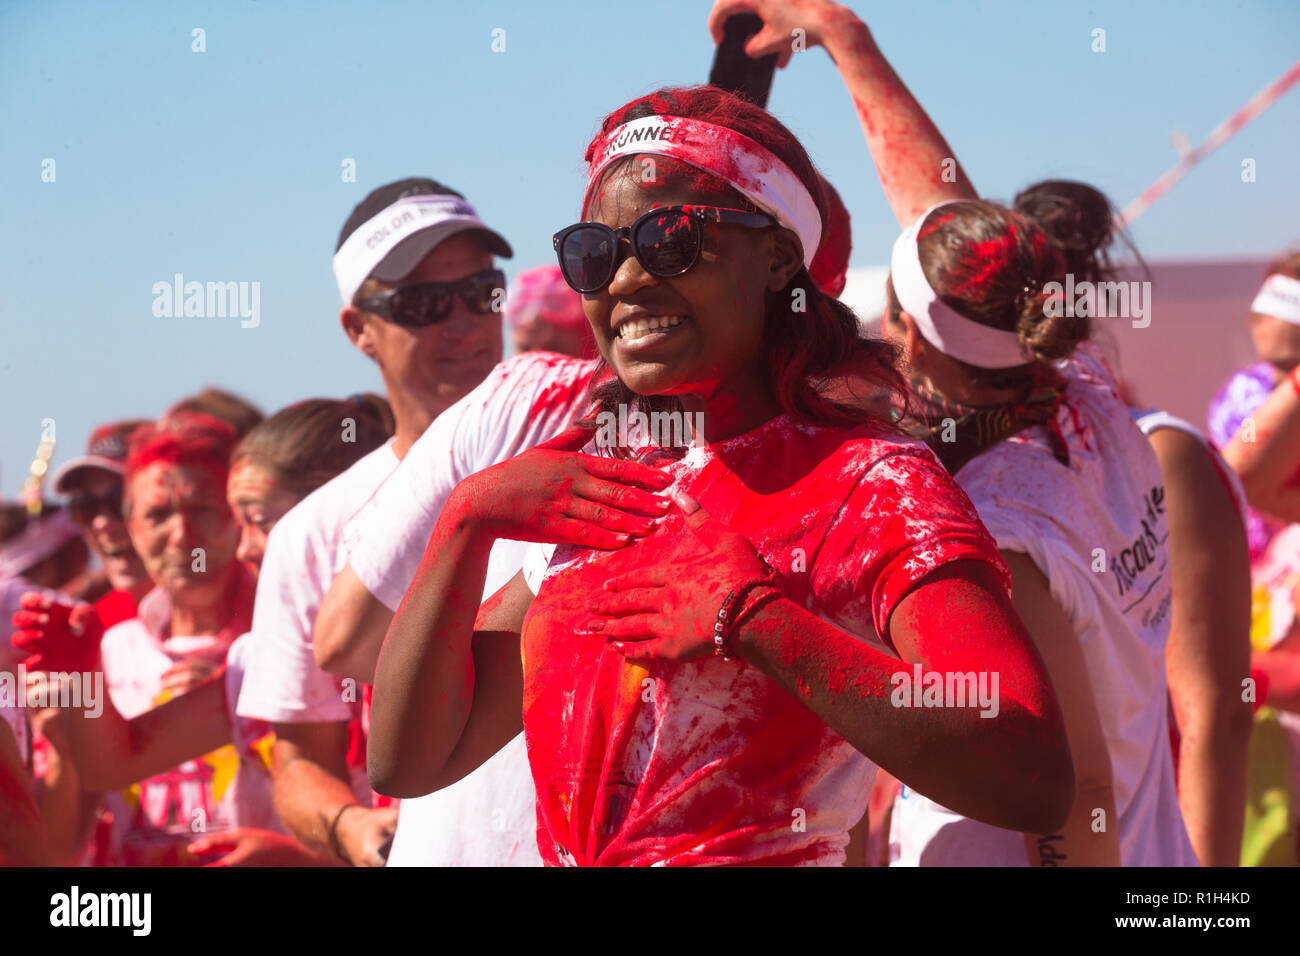 Africano nero lady donna o coperto di rosso vernice in polvere indossando occhiali da sole e fascia bianca che posano per una foto a fun run evento sportivo in estate Foto Stock